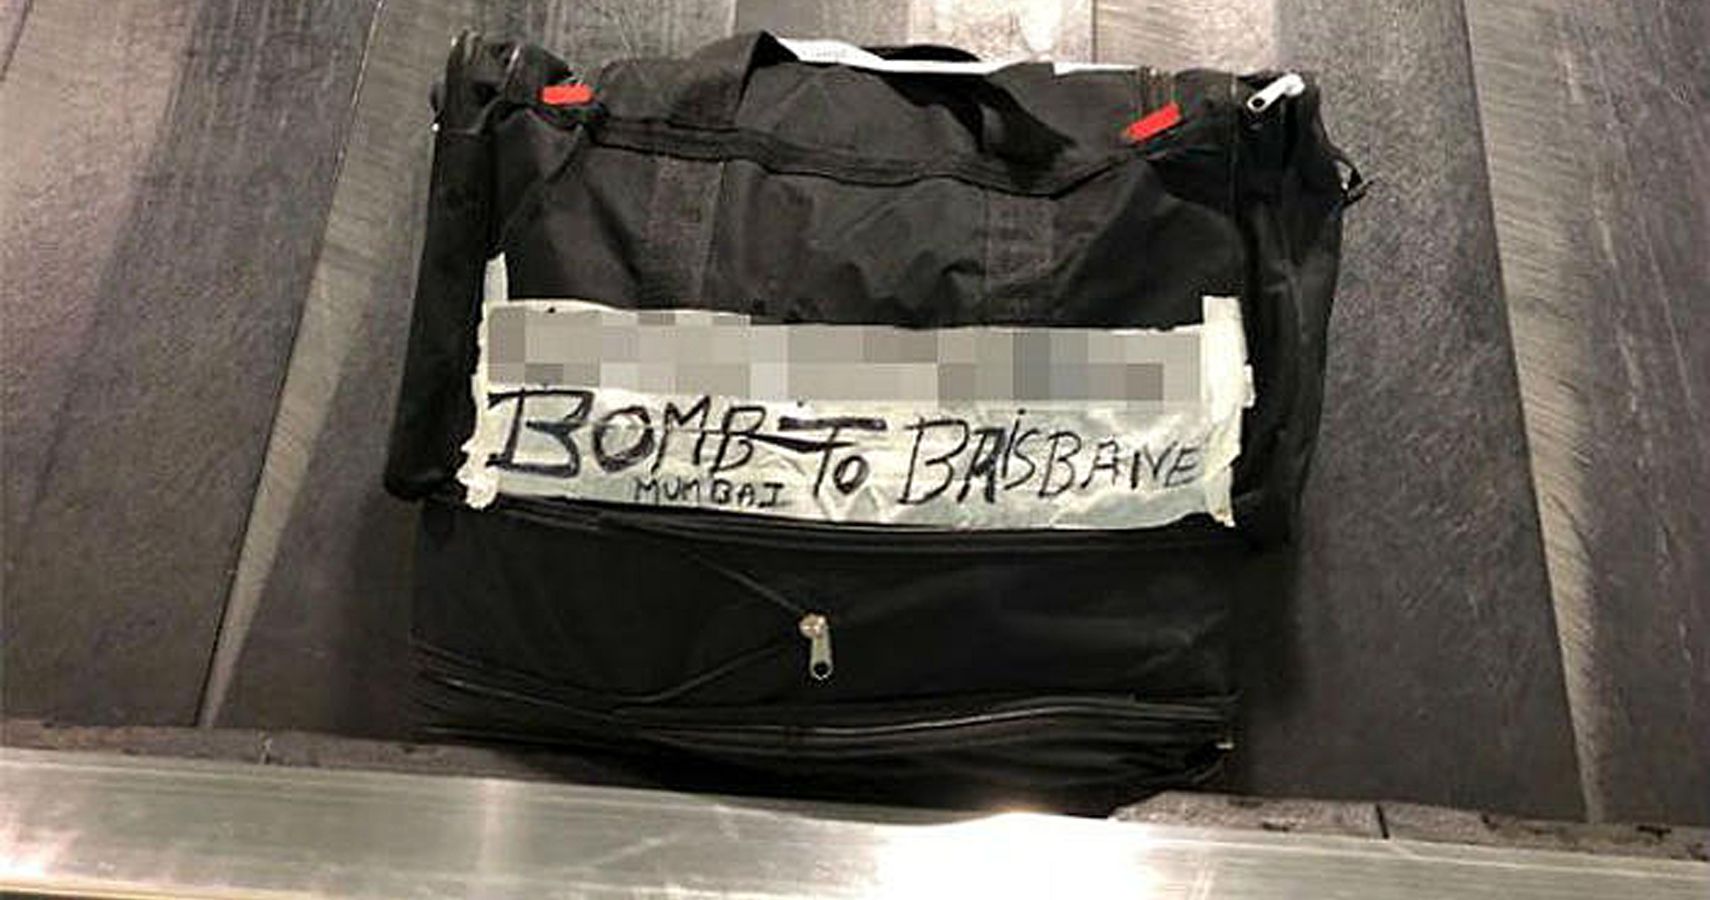 Avo desencadeia acidentalmente uma ameaca de bomba no aeroporto de